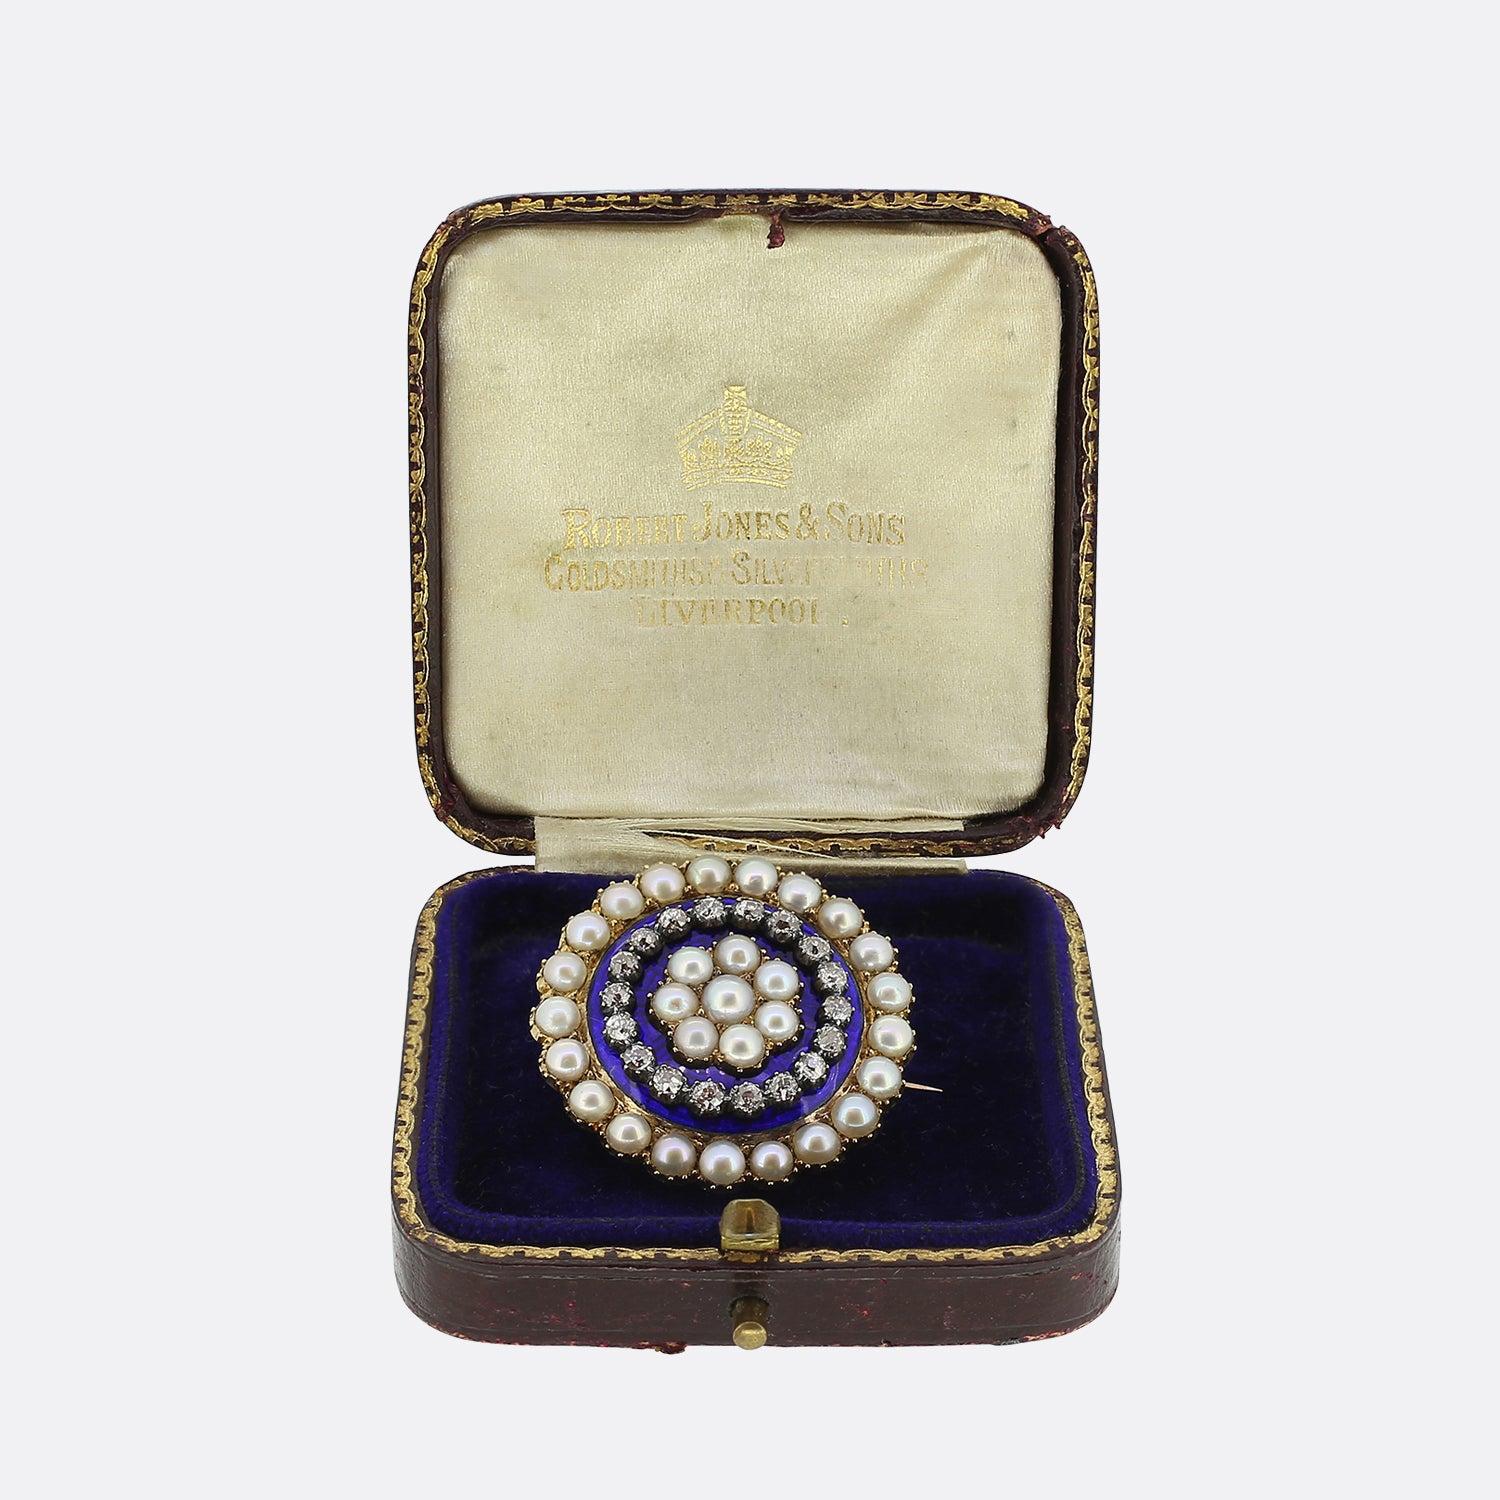 Il s'agit d'une broche victorienne en or 15ct à double cœur en perles et diamants. La broche présente un double motif de cœur en diamant taillé en rose, réalisé en argent, dans une section centrale en émail bleu et blanc. Vingt-huit perles